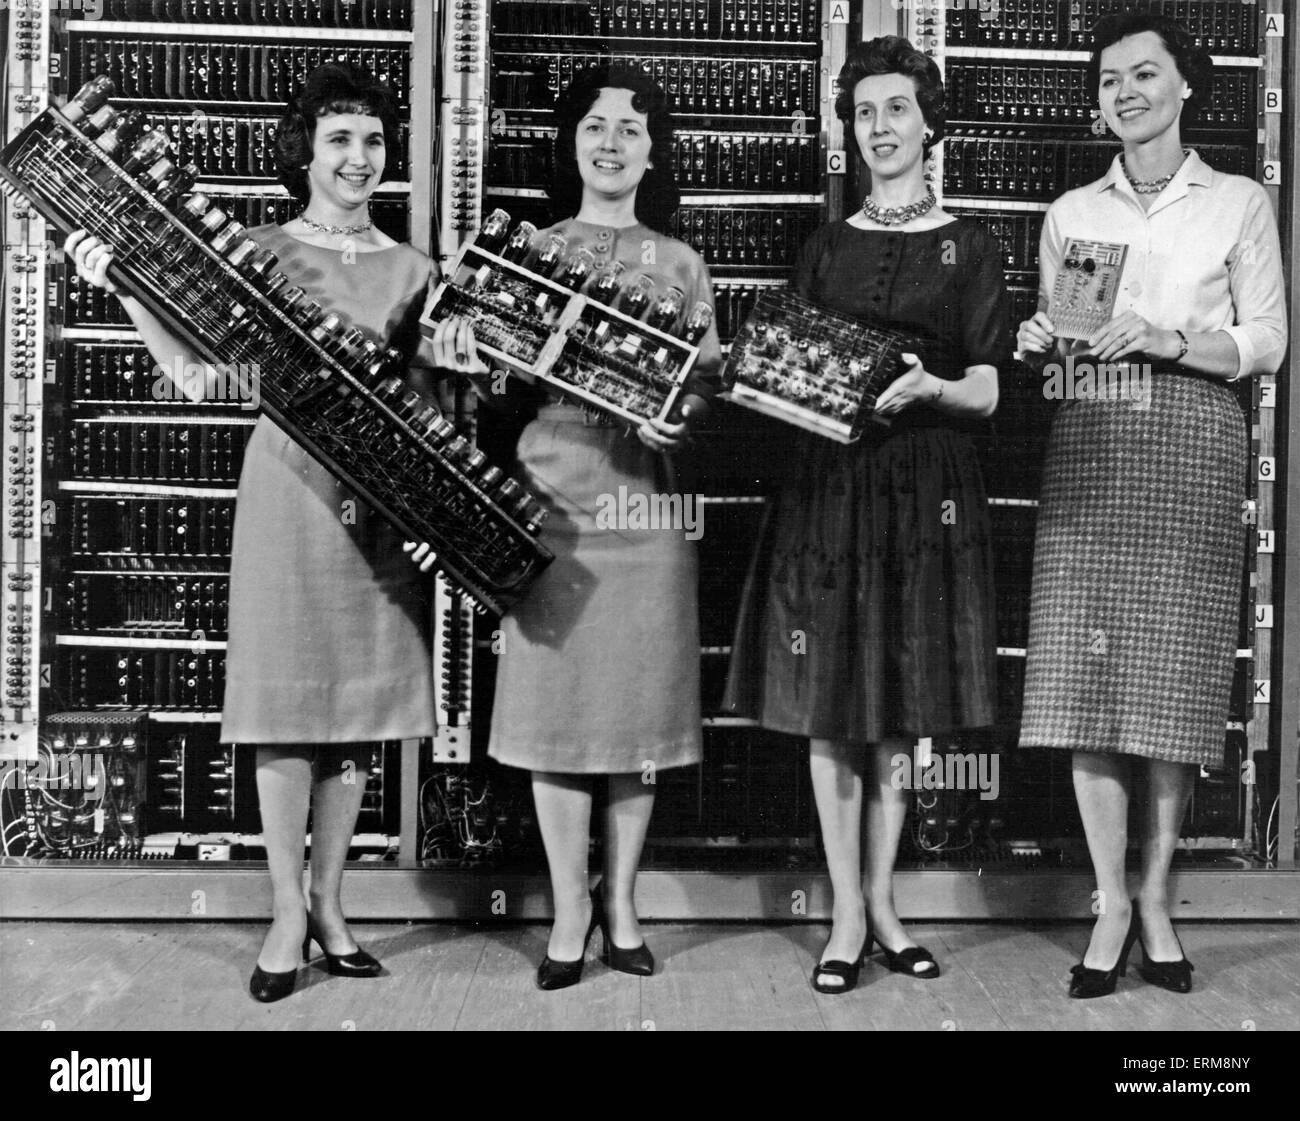 ENIAC COMPUTER über 1946.  Von links: Patsy Simmern hält ein ENIAC-Board; Gail Taylor hält eine EDVAC Board; Milly Beck mit einem ORDVAC-Board und Norma Stec hält eine BRLESC-ich an Bord. Bild begleitet die offizielle Bekanntgabe der Existenz des Computers. Foto U.S. Army Stockfoto